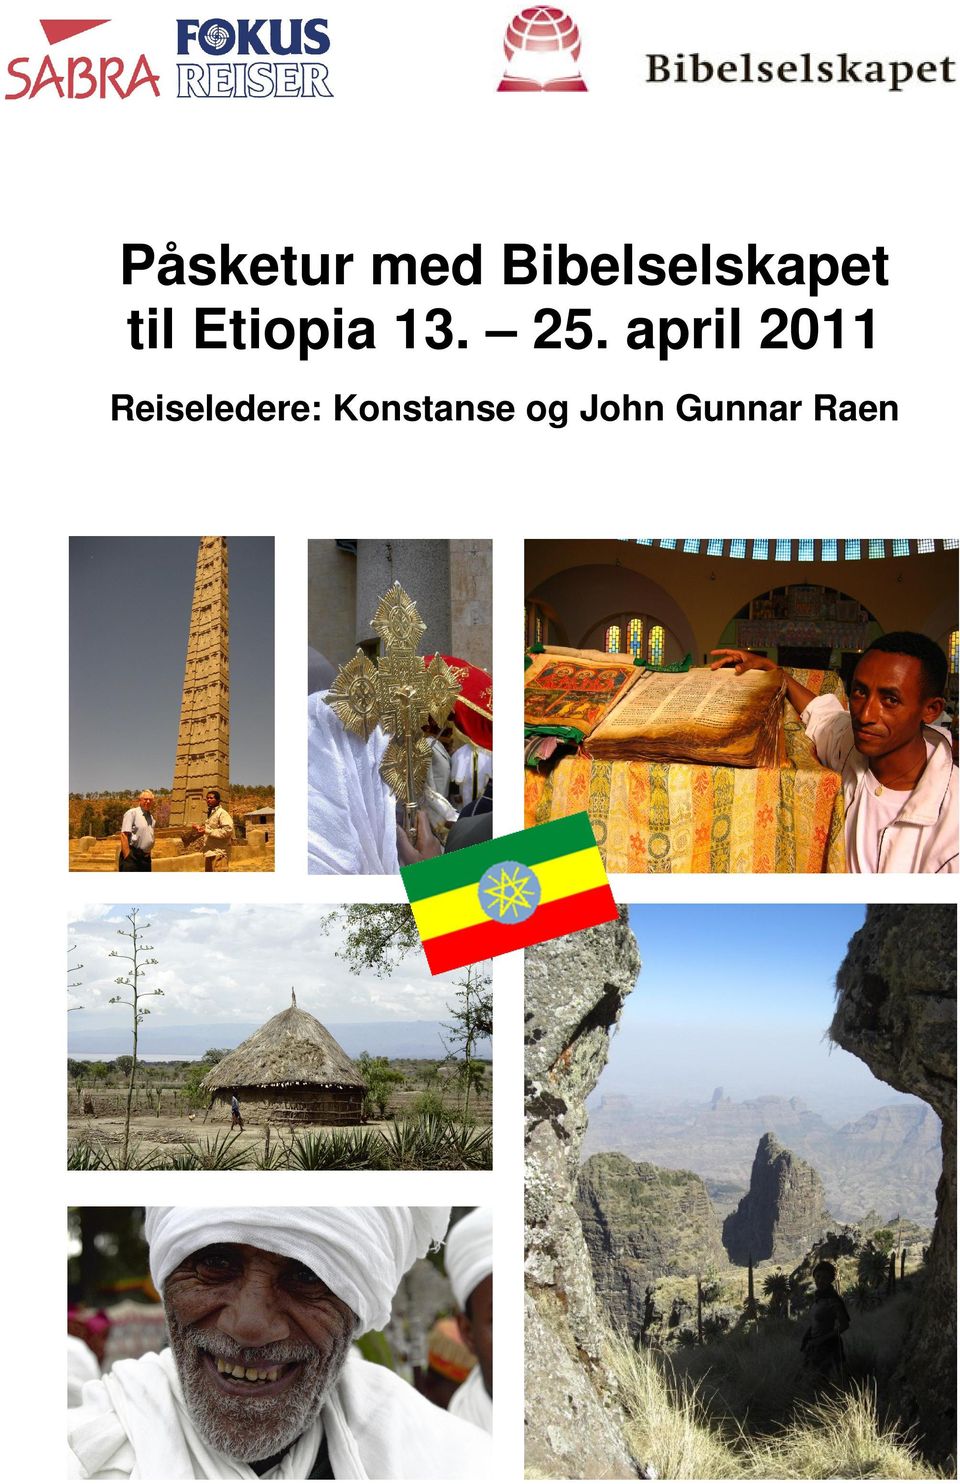 Etiopia 13. 25.